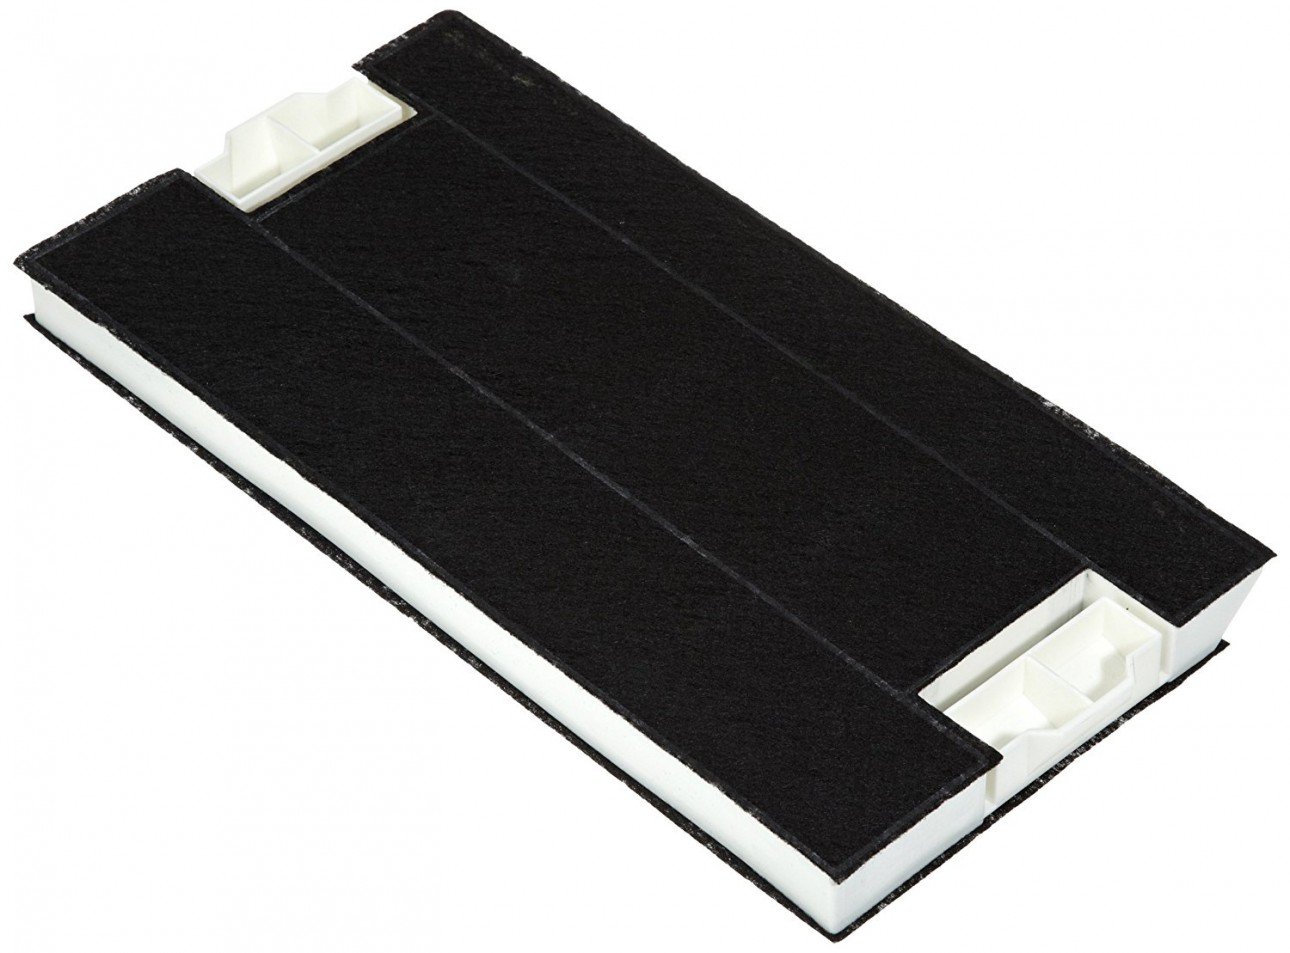 Kohlefilter - passend für Bosch-Aktivfilter DHZ4506 - Ersatz für 00434229 - Größe ca. 40 cm x 20 cm x 3 cm